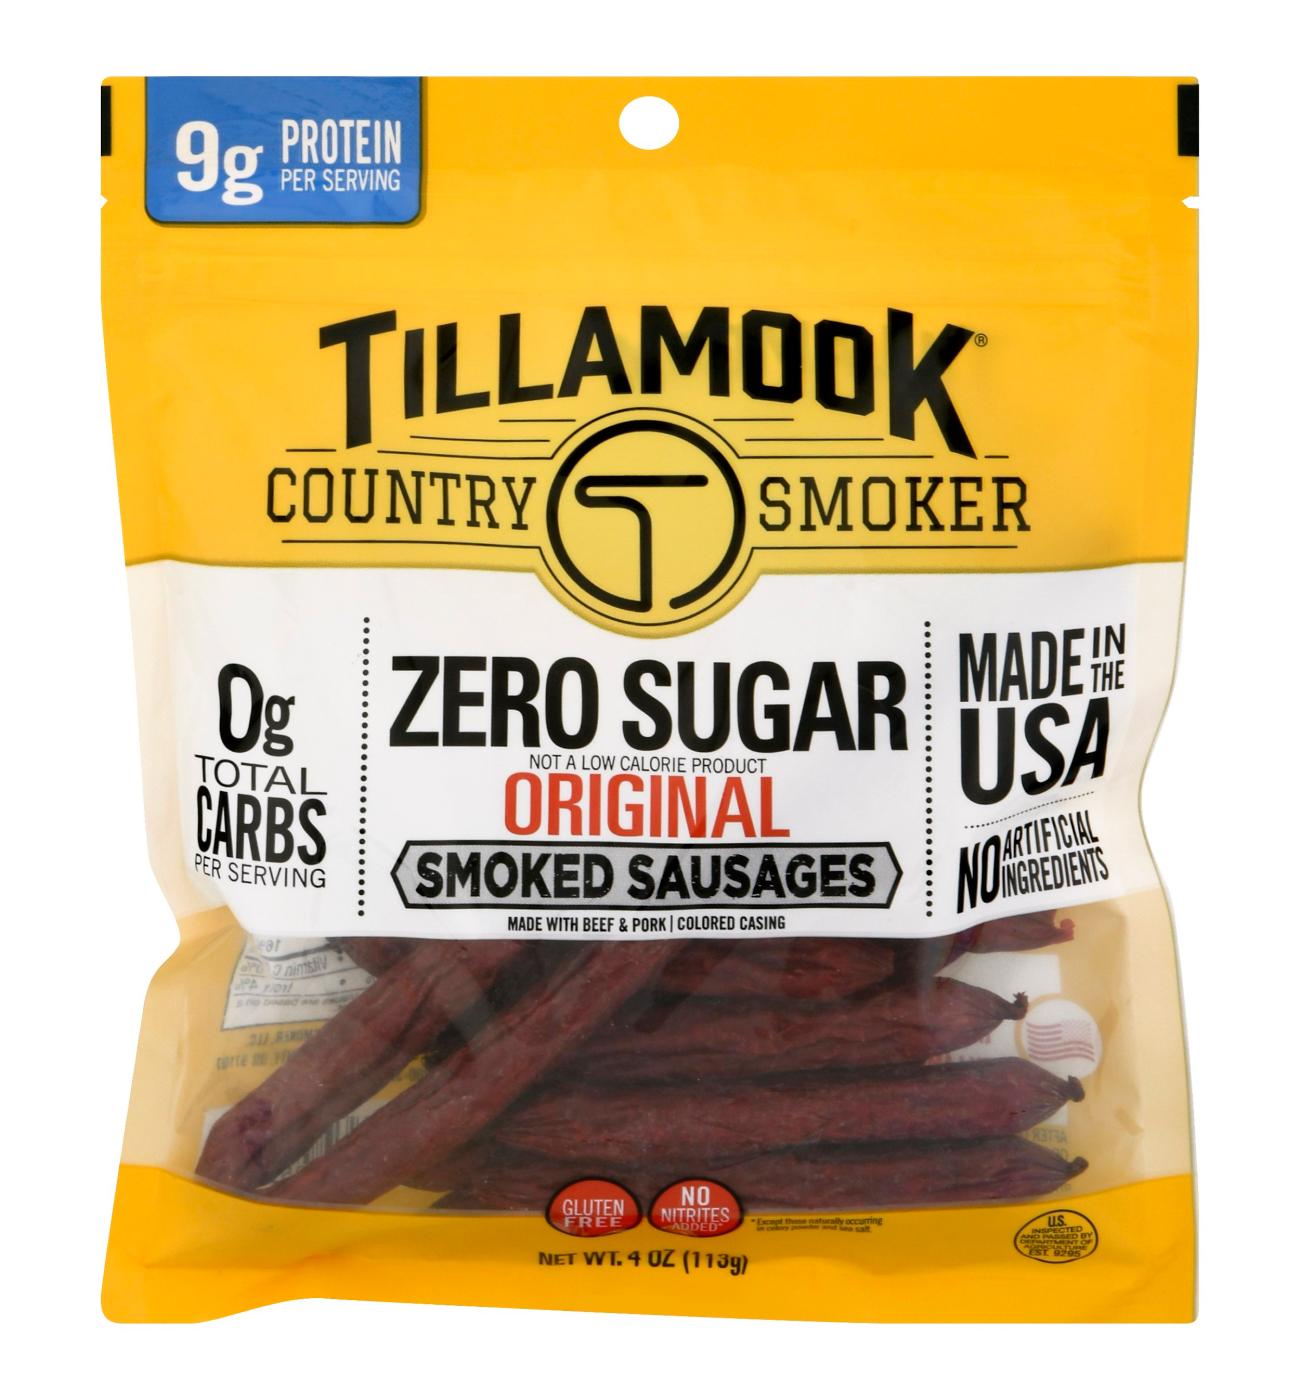 Tillamook Country Smoker Zero Sugar Original Sausage Sticks; image 1 of 2